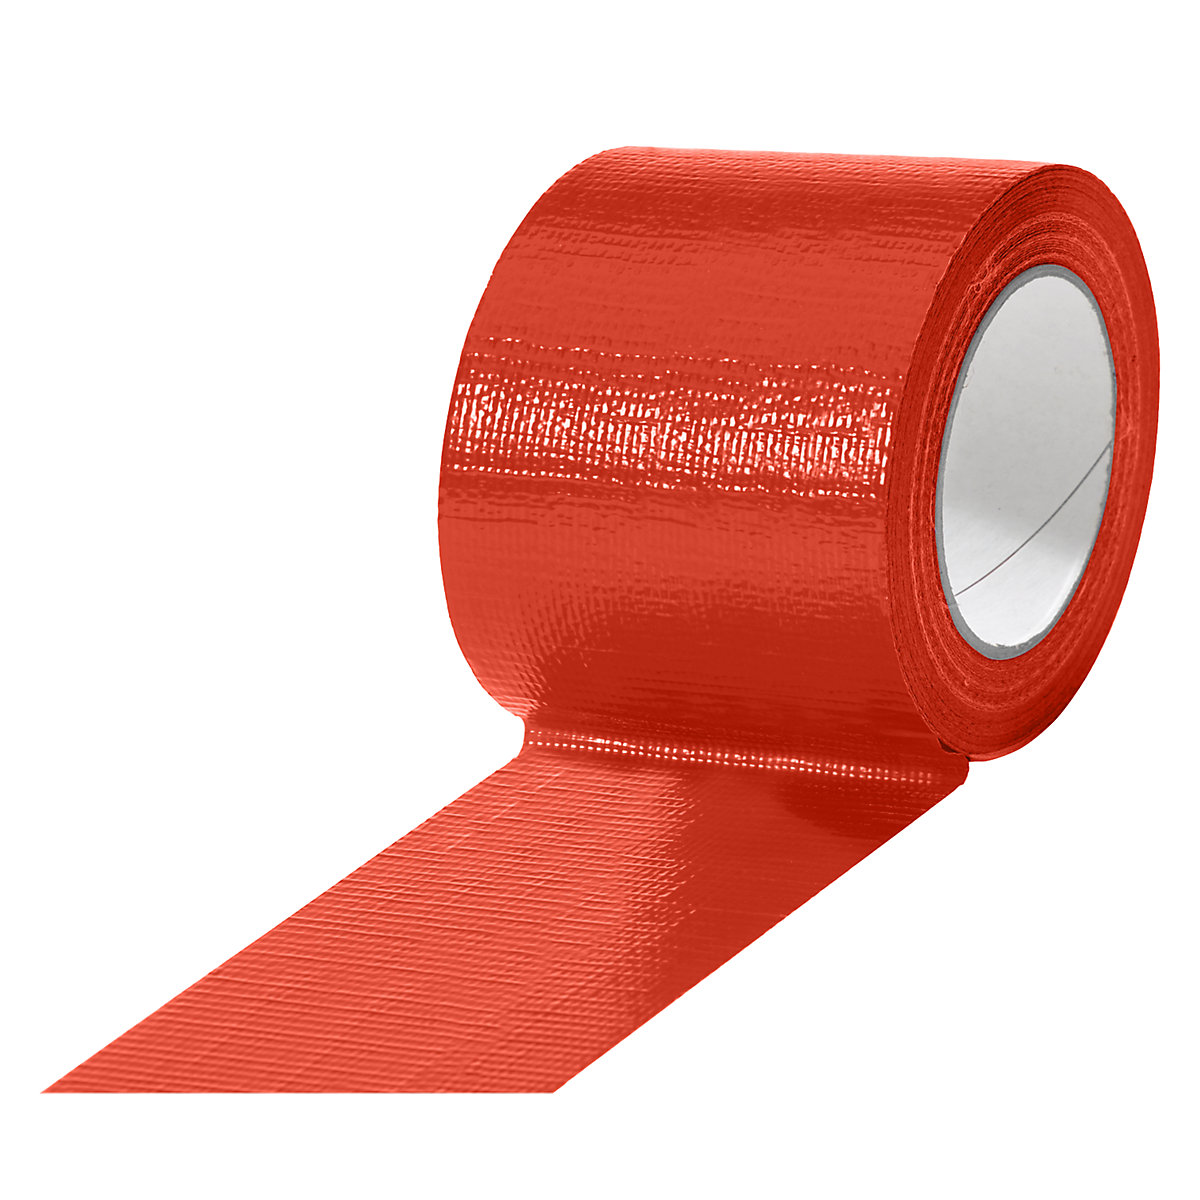 Textilná páska, v rôznych farbách, OJ 12 kotúčov, červená, šírka pásky 75 mm-14